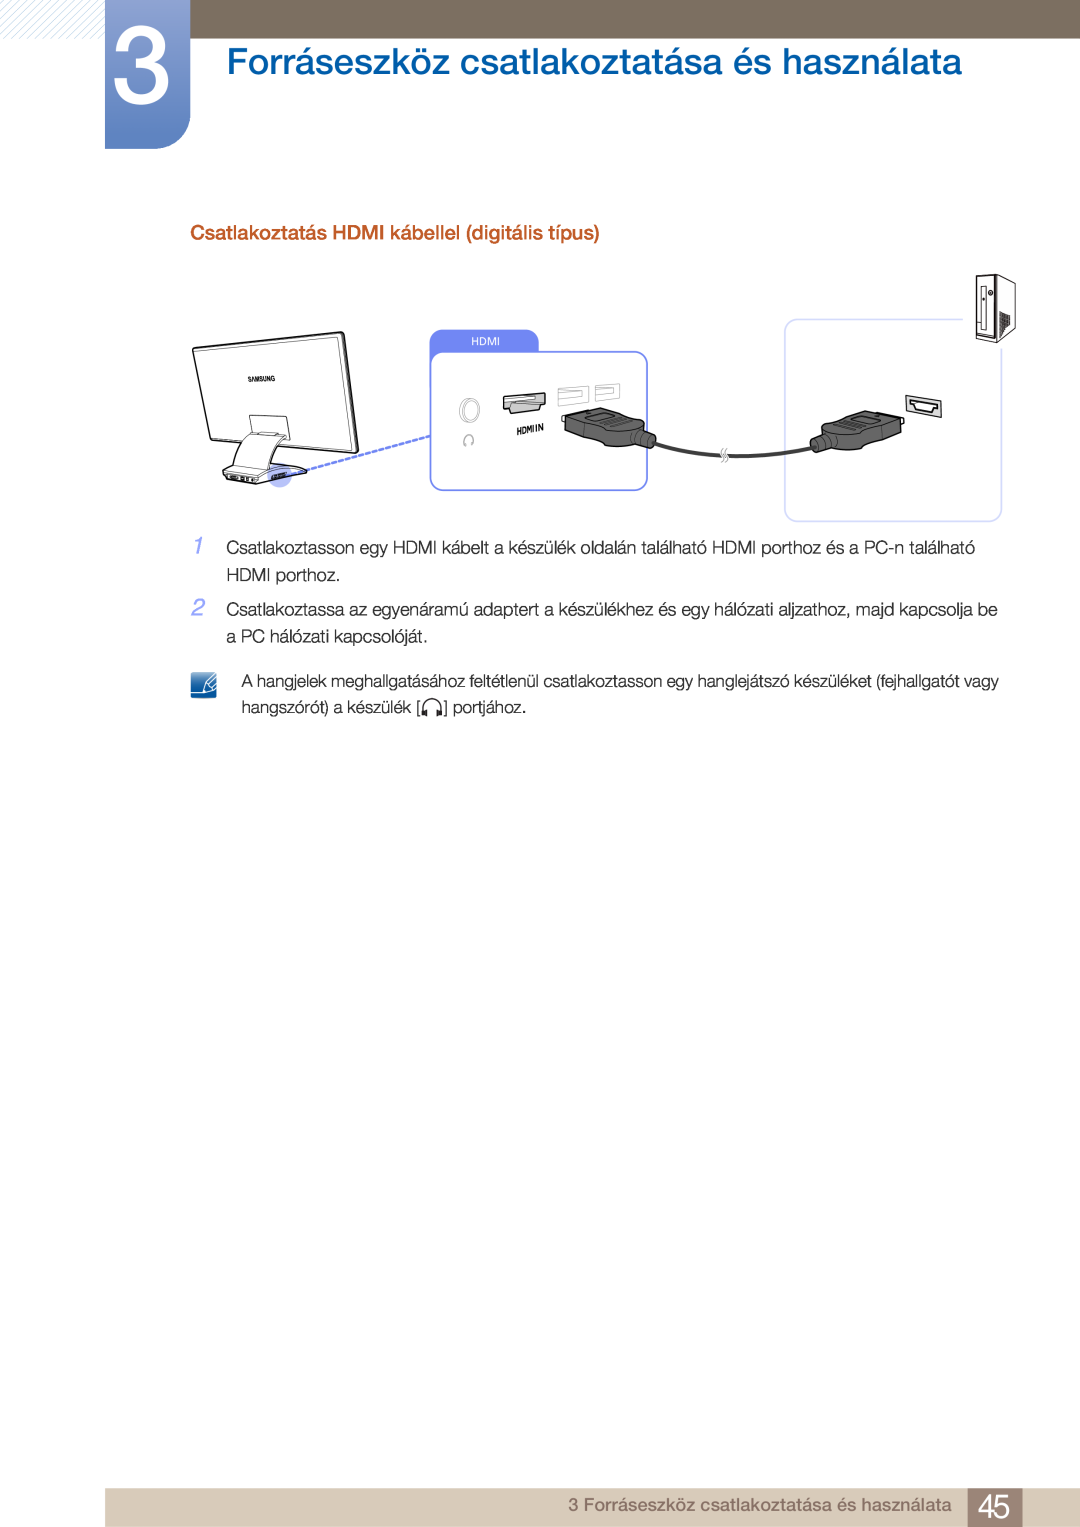 Samsung LC23A750XS/EN manual Forráseszköz csatlakoztatása és használata, Csatlakoztatás HDMI kábellel digitális típus 